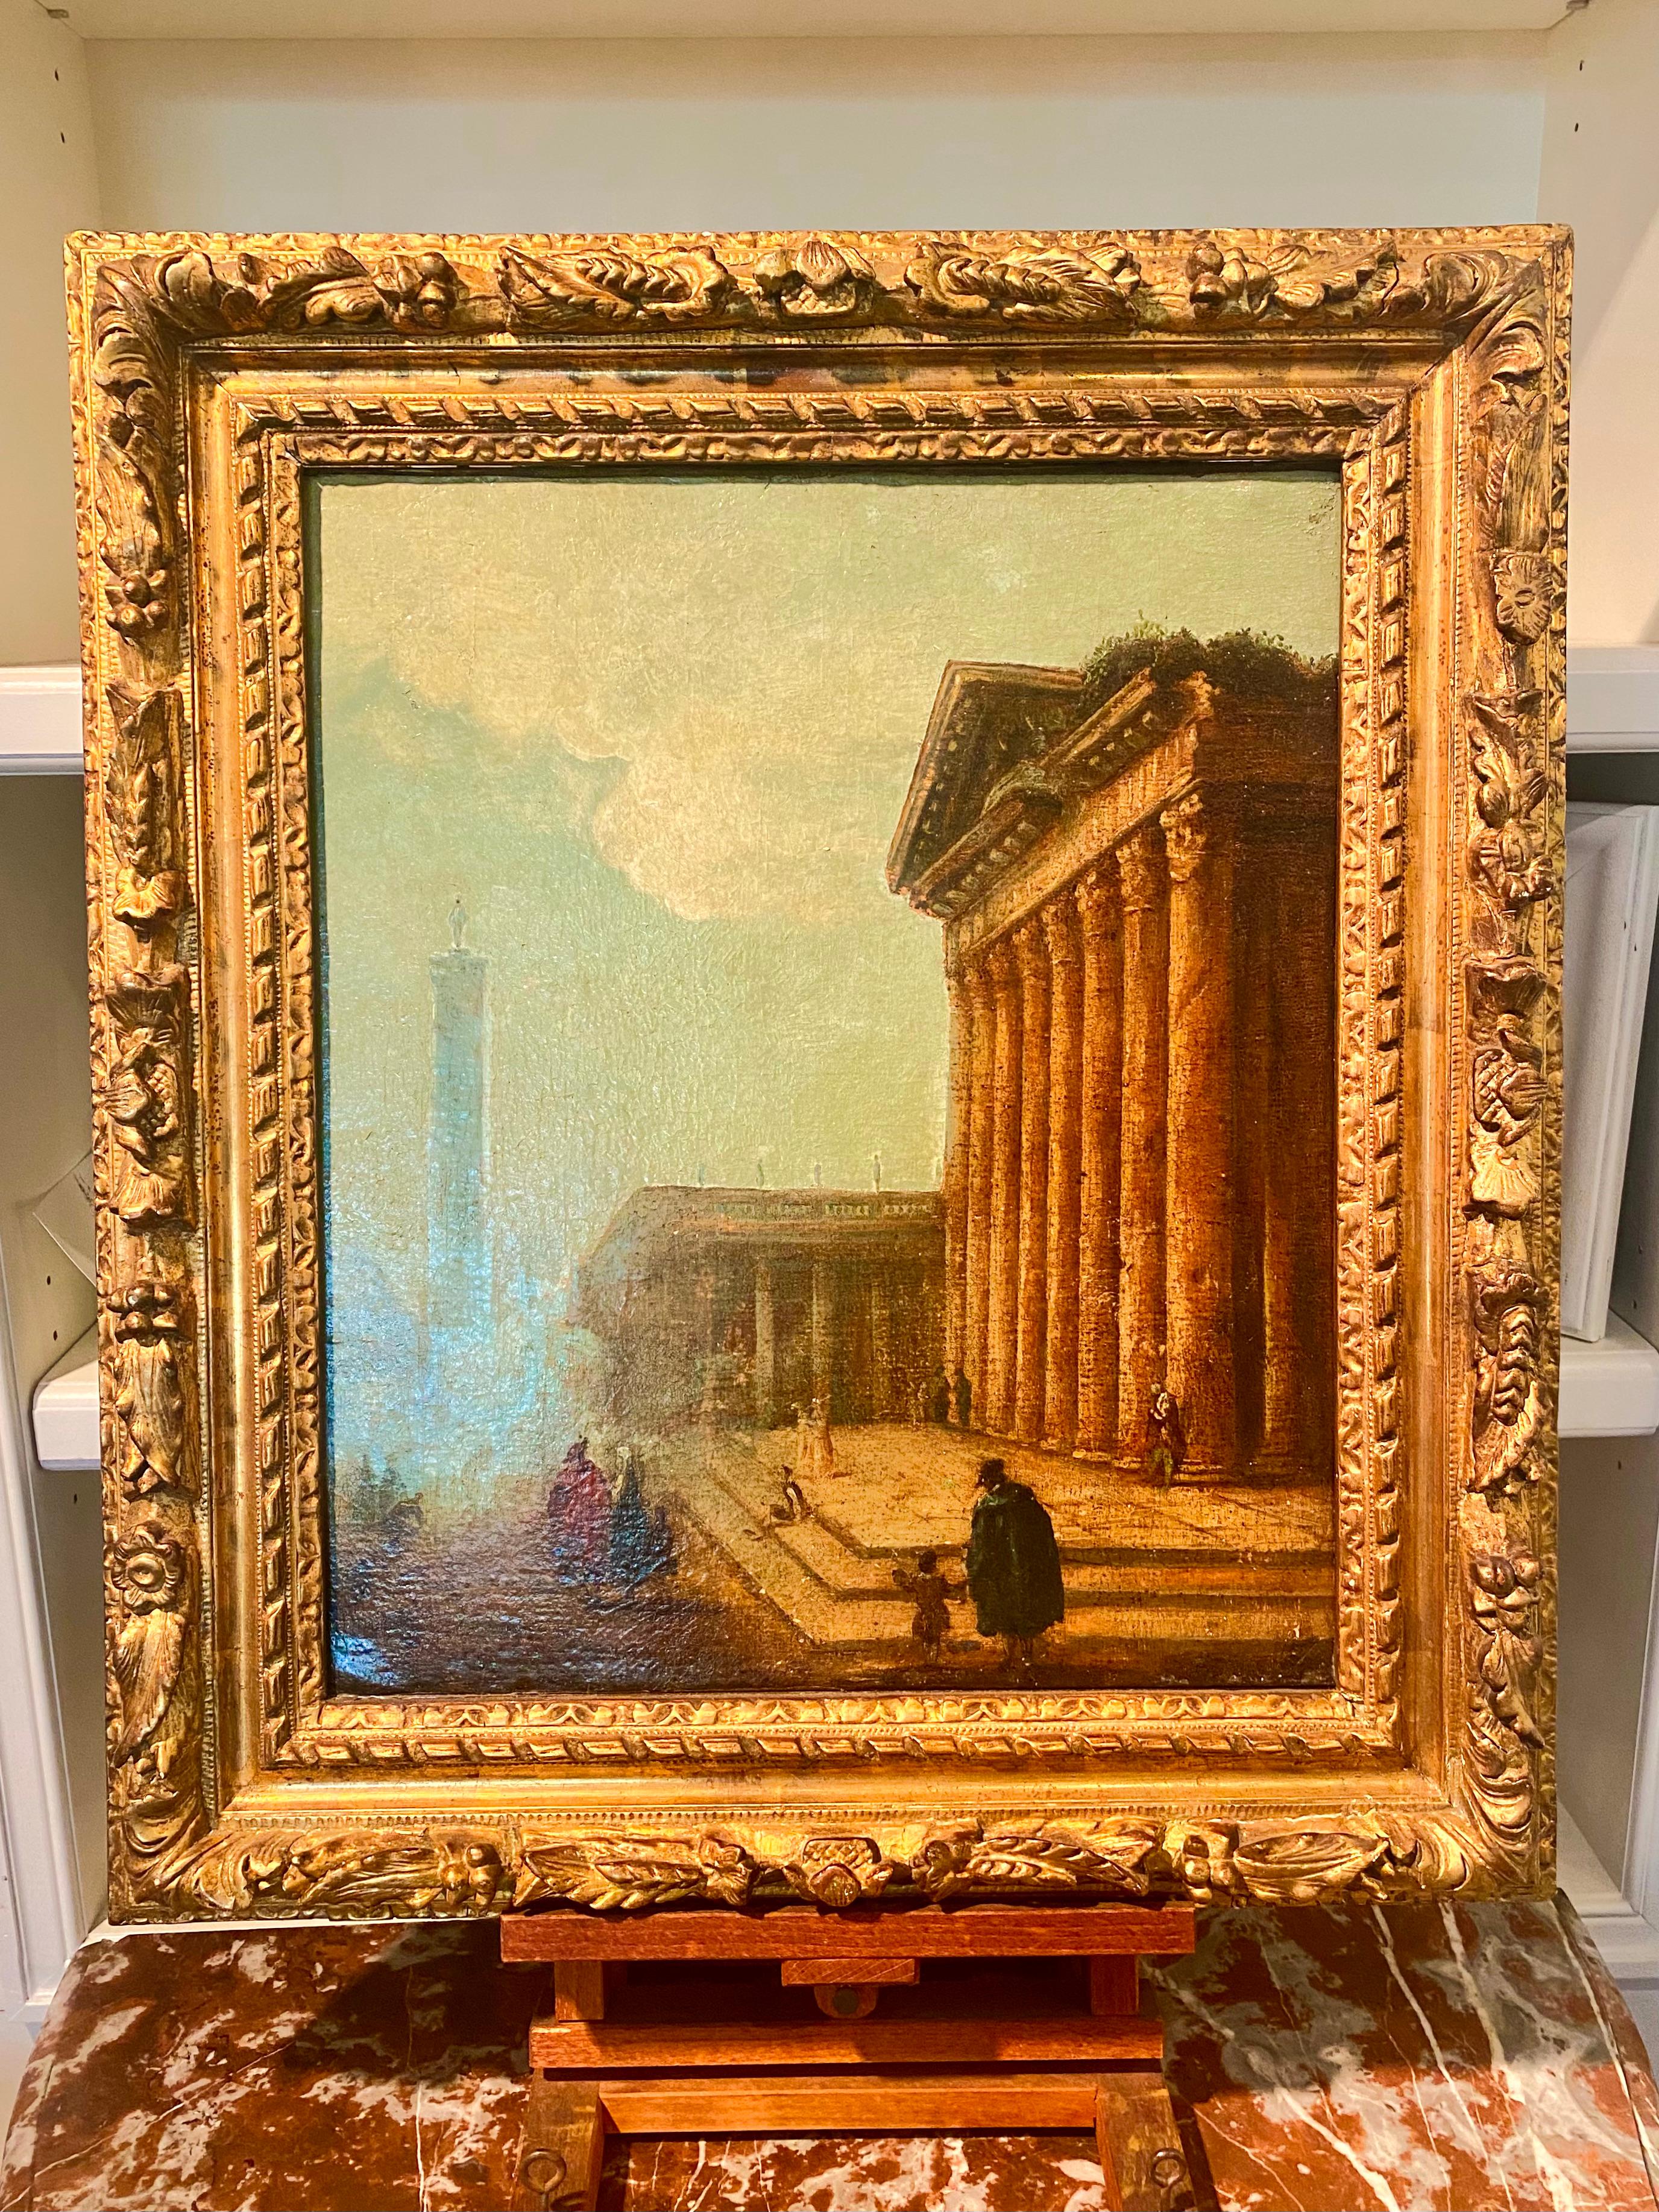 Französische architektonische Landschaft im neoklassischen Stil, Öl auf Leinwand

In der Art der Grand Tour, außergewöhnliche, leuchtende Malerei. 

Schöne Größe, Maßstab und Qualität des Themas und des Gemäldes. 

Die Kleidung und das